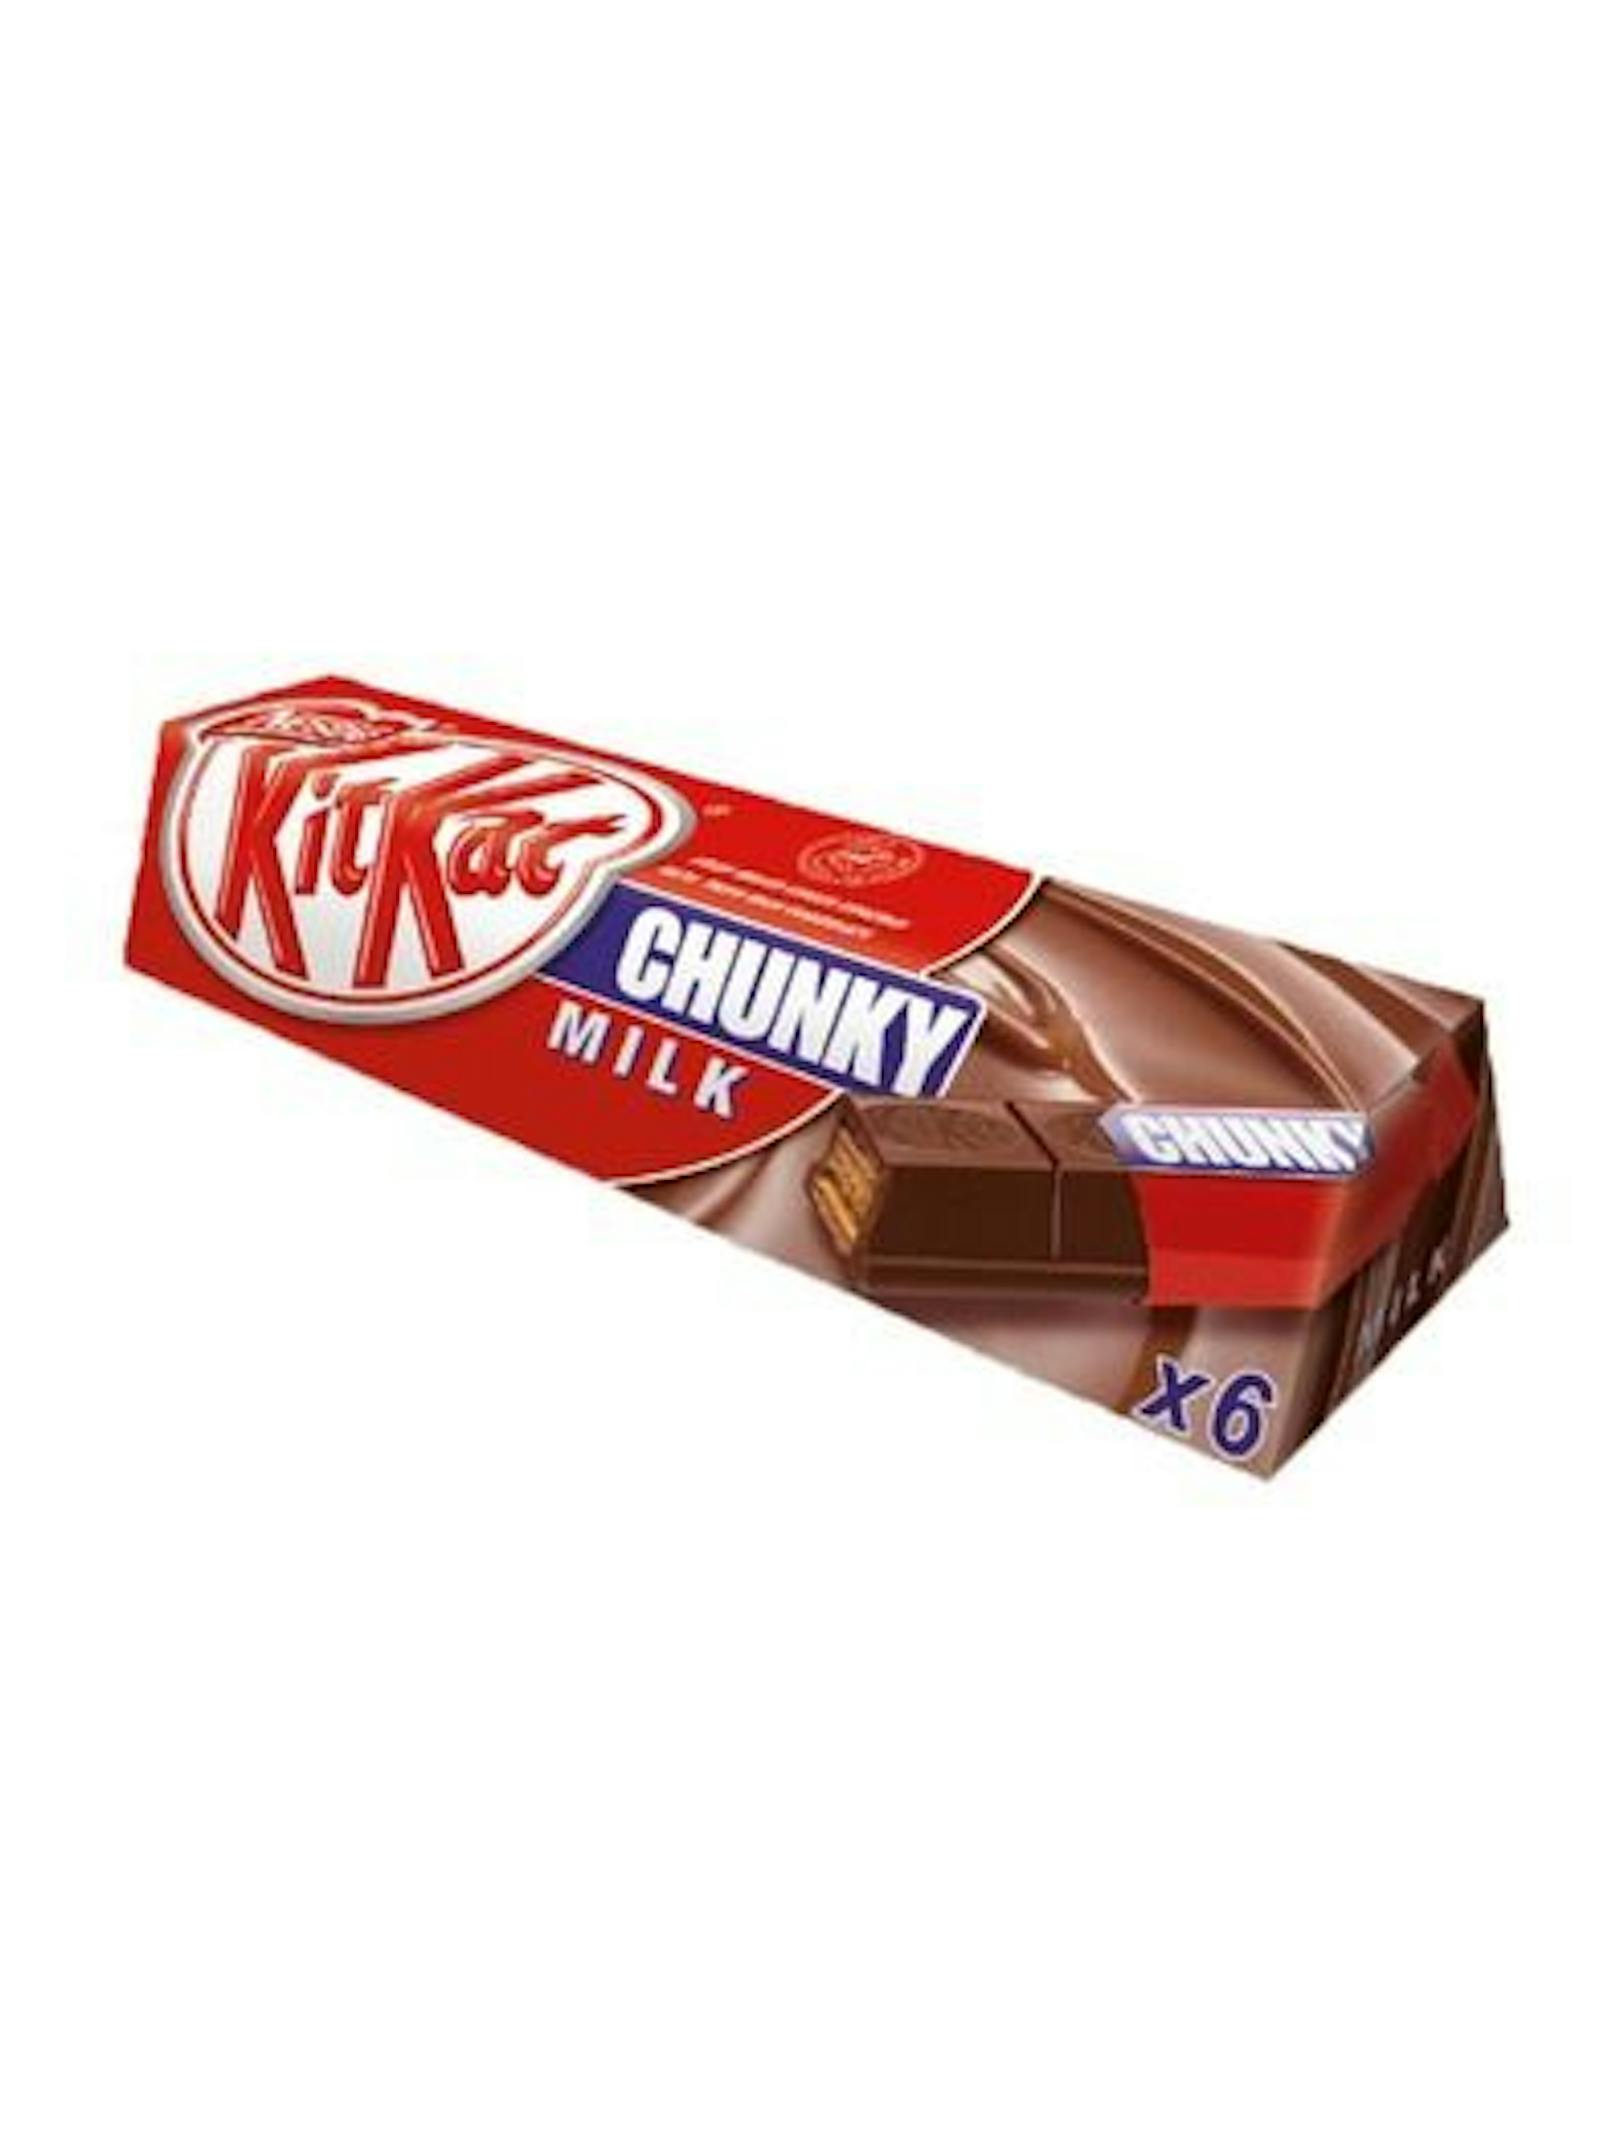 <strong>Kitkat Chunky Sammelpack:&nbsp;</strong>Im Sammelpack waren einmal fünf Riegel enthalten. Seit Januar 2020 sind es nur mehr vier - was bei gleich bleibendem Preis eine effektive Steigerung von 20 Prozent ergibt.